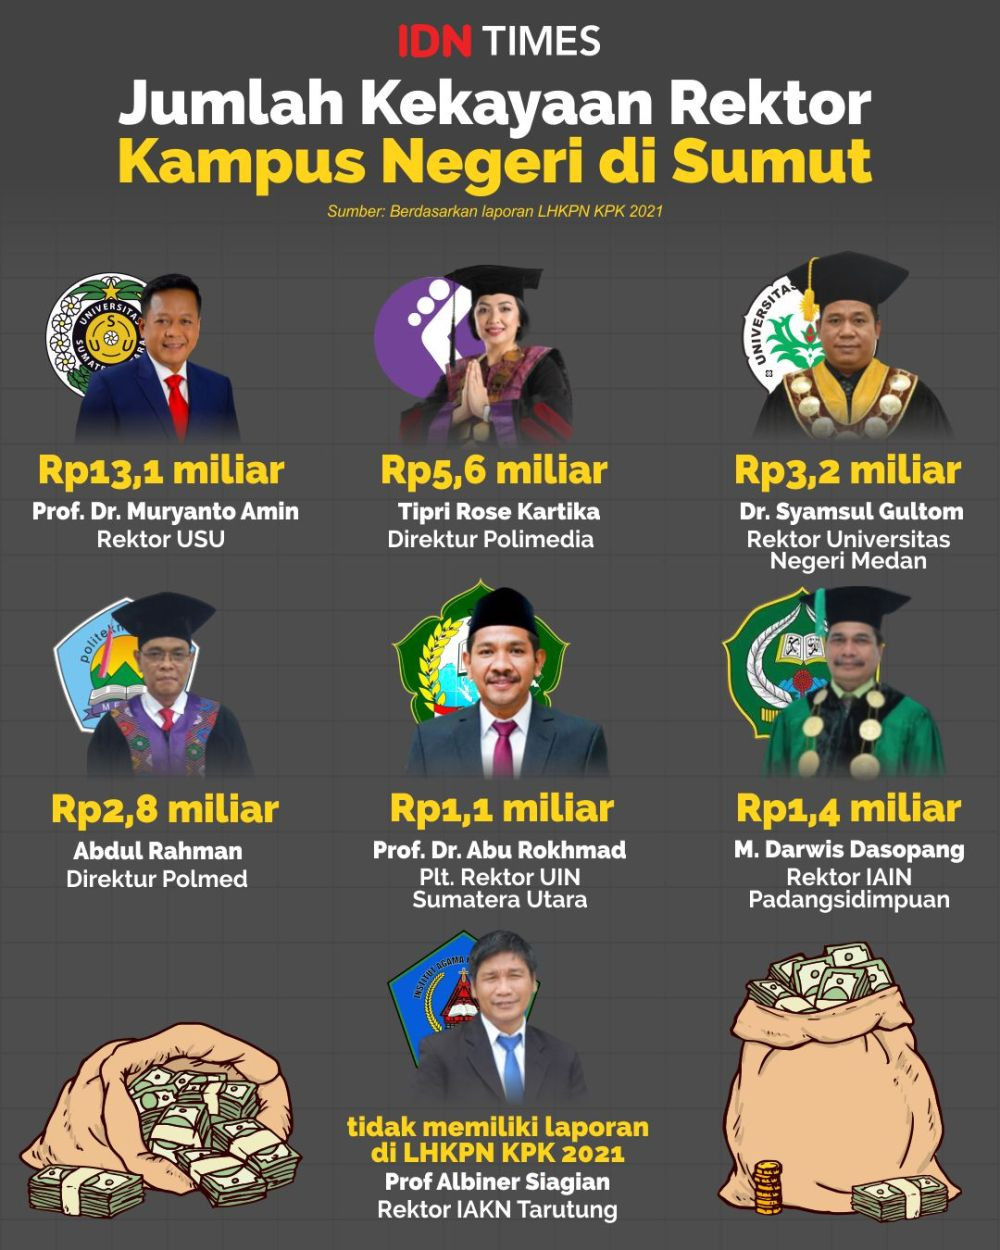 2 Tahun Menjabat, Muryanto Amin Jadi Rektor PTN Terkaya Ke-6 Indonesia